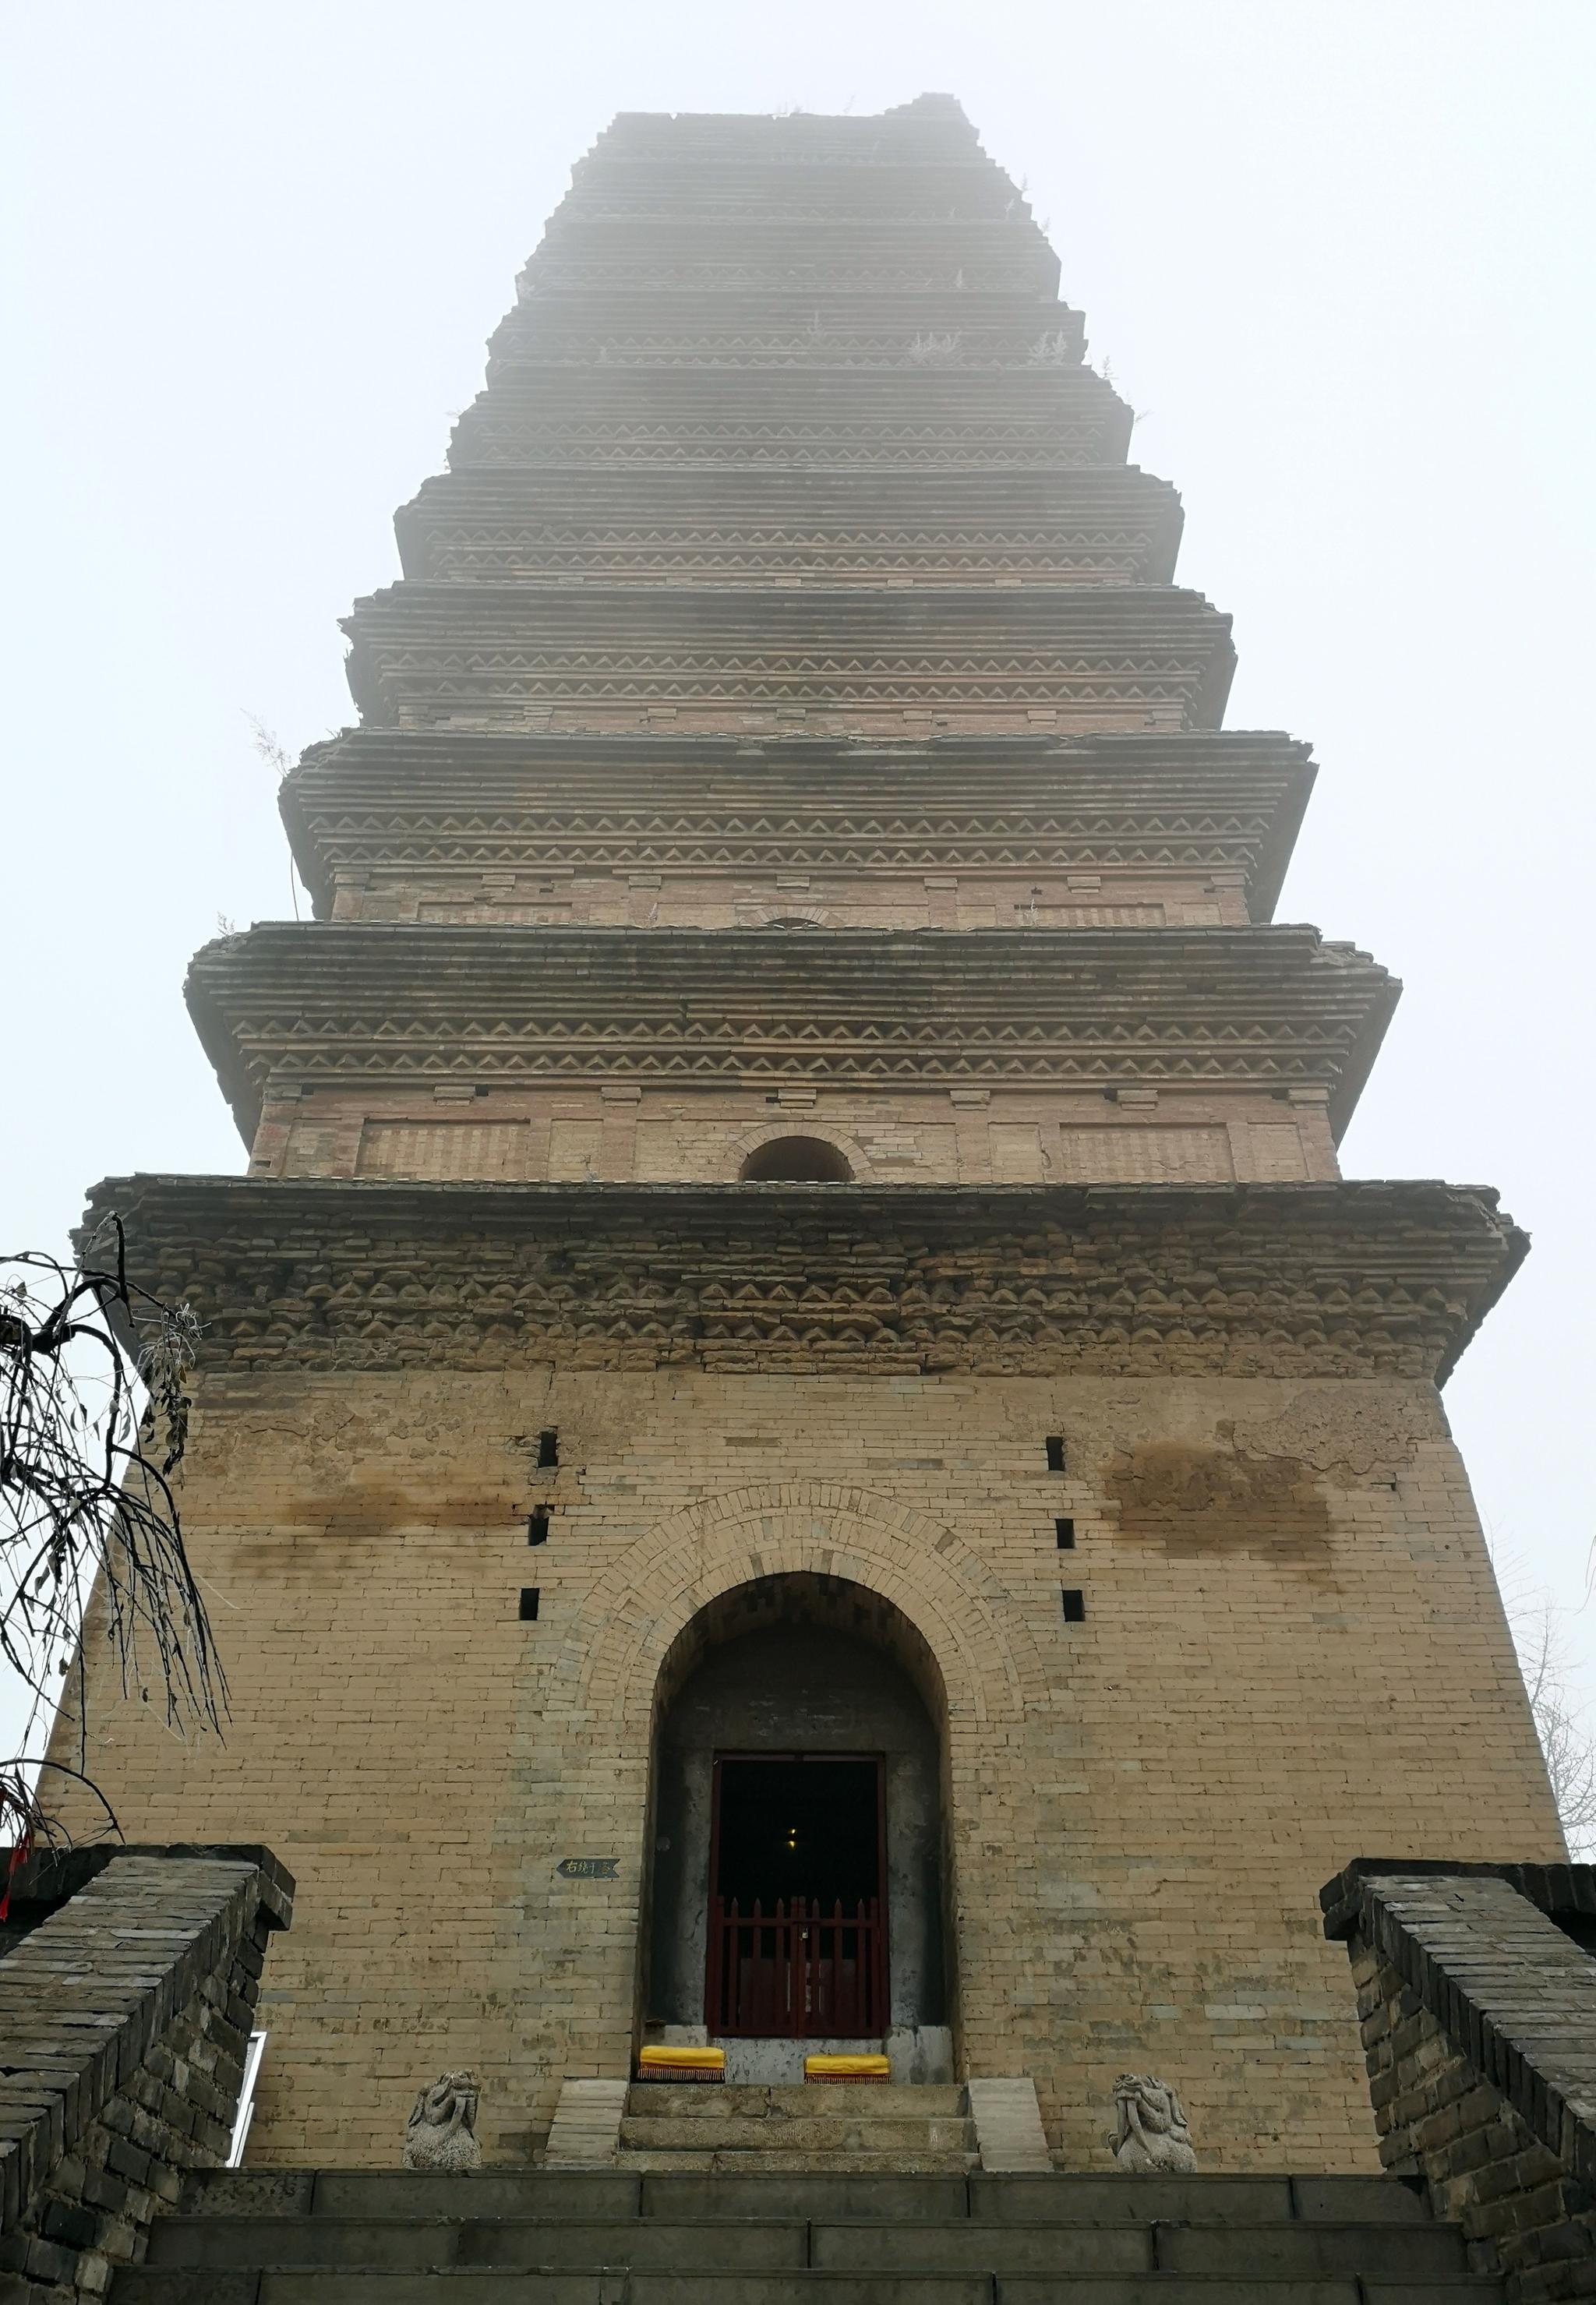 香积寺善导塔位于陕西省西安市长安区潏滈两河交汇处的香积村香积寺内